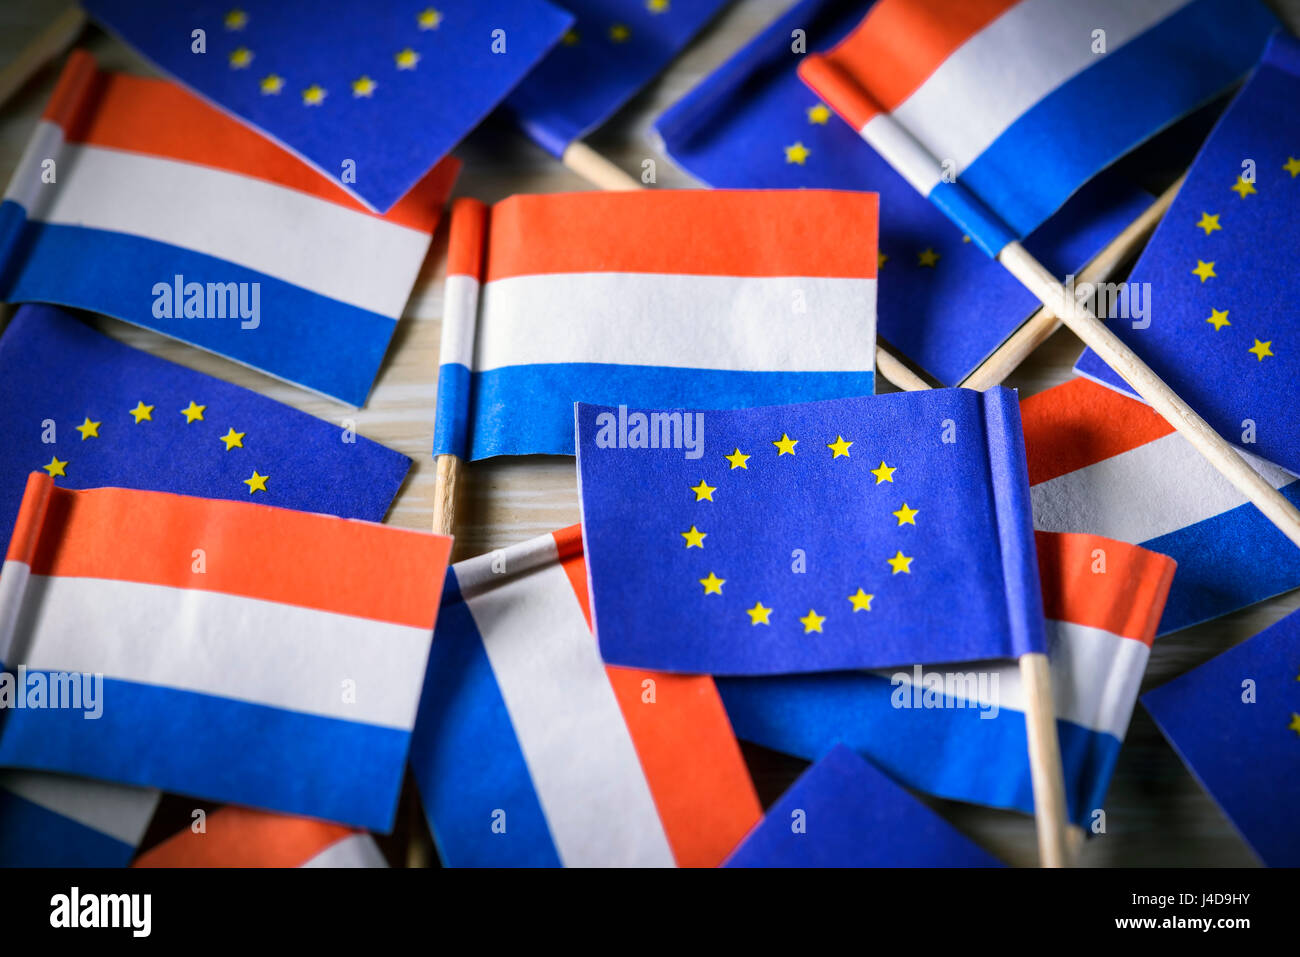 Flags of the Netherlands and the EU, parliamentary election in the Netherlands, Fahnen von den Niederlanden und der EU, Parlamentswahl in den Niederla Stock Photo